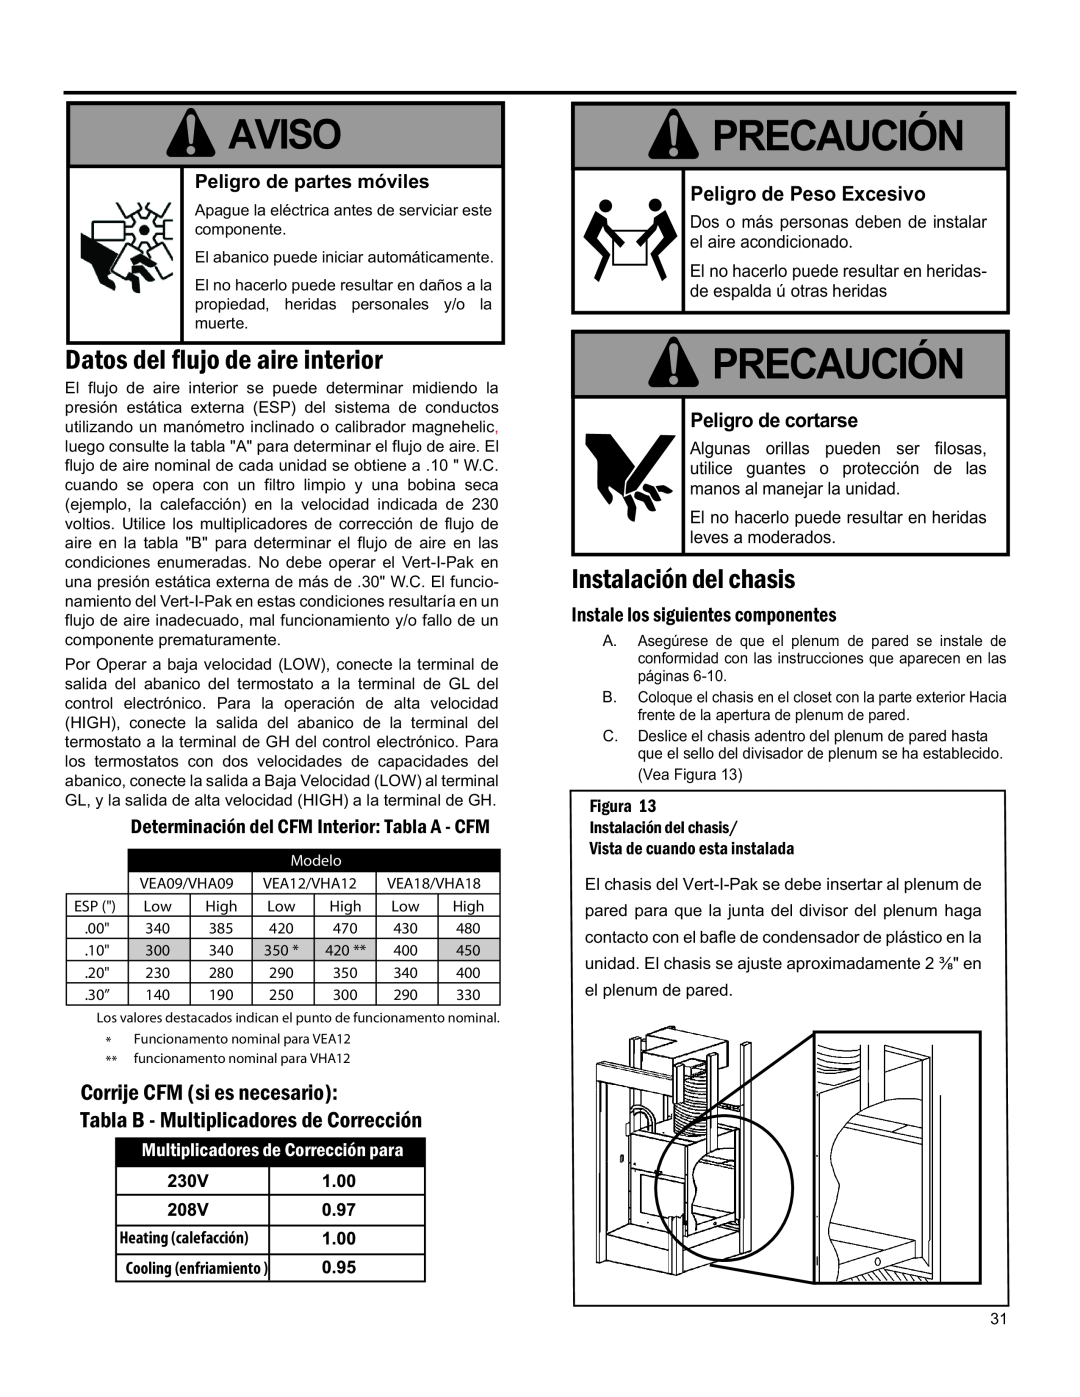 Friedrich 920-075-13 (1-11) operation manual Precaución, Aviso, Peligro de partes móviles, Datos Del Flujo De Aire Interior 